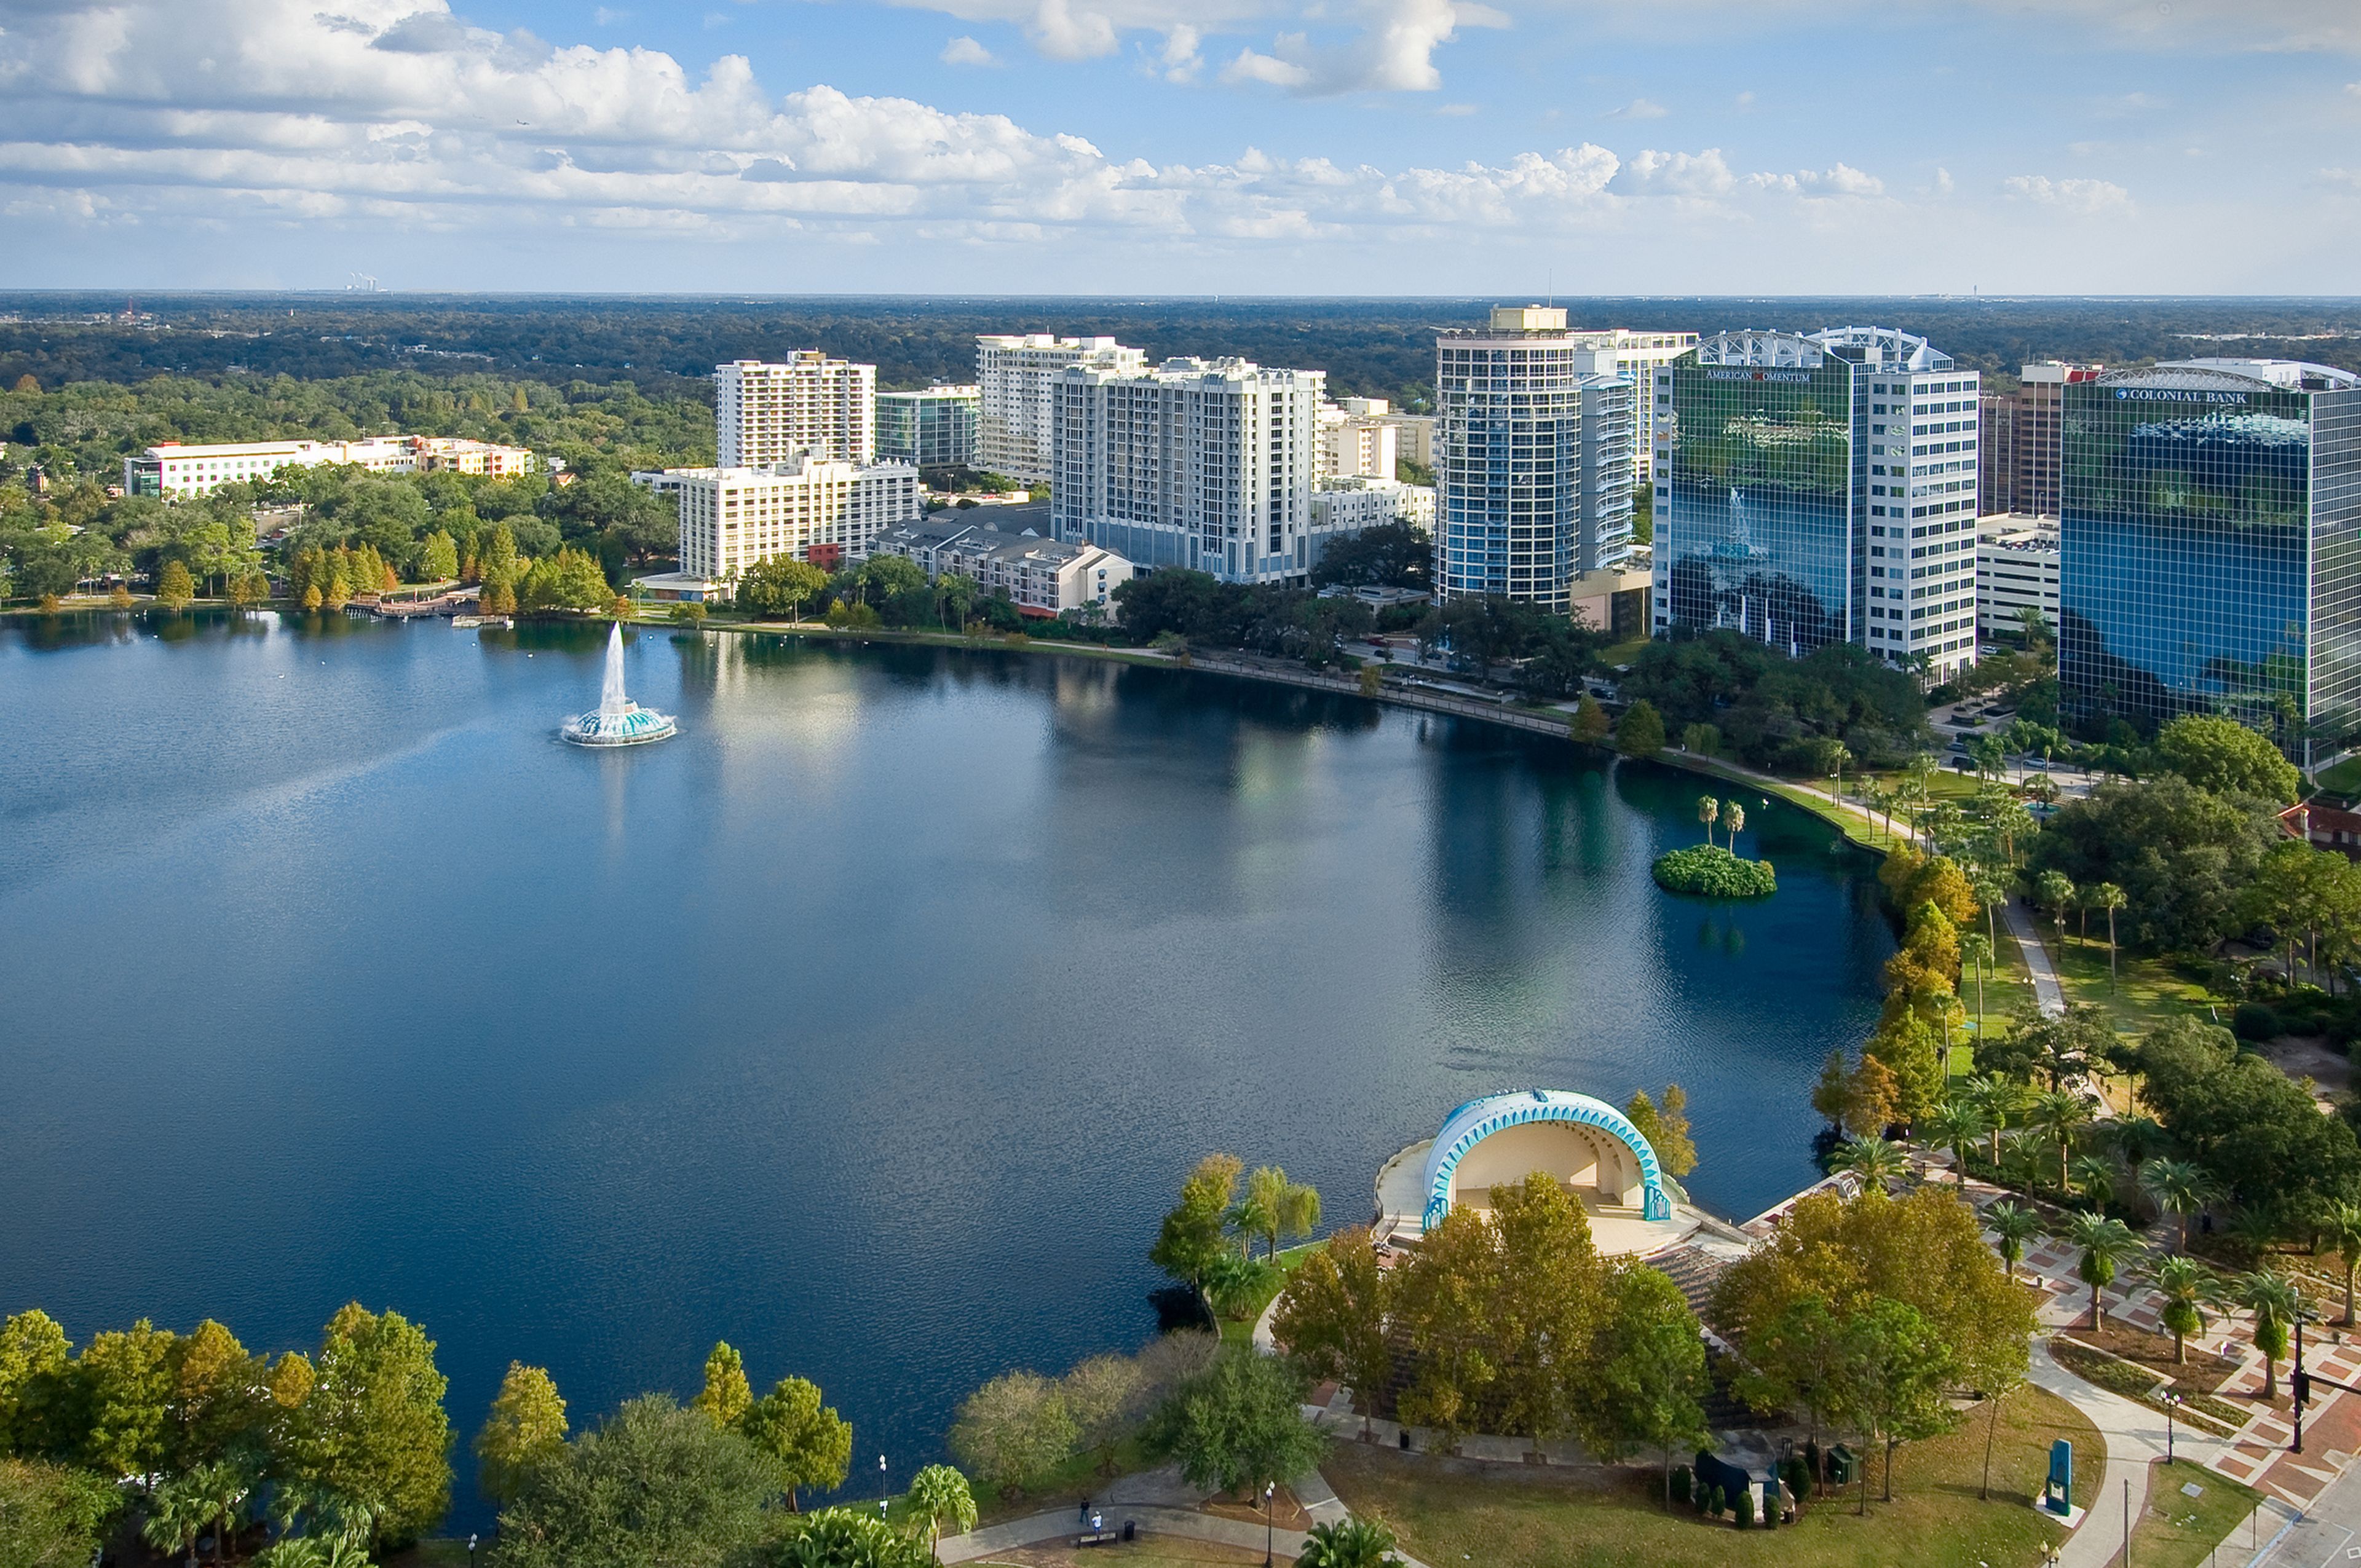 Orlando, Florida